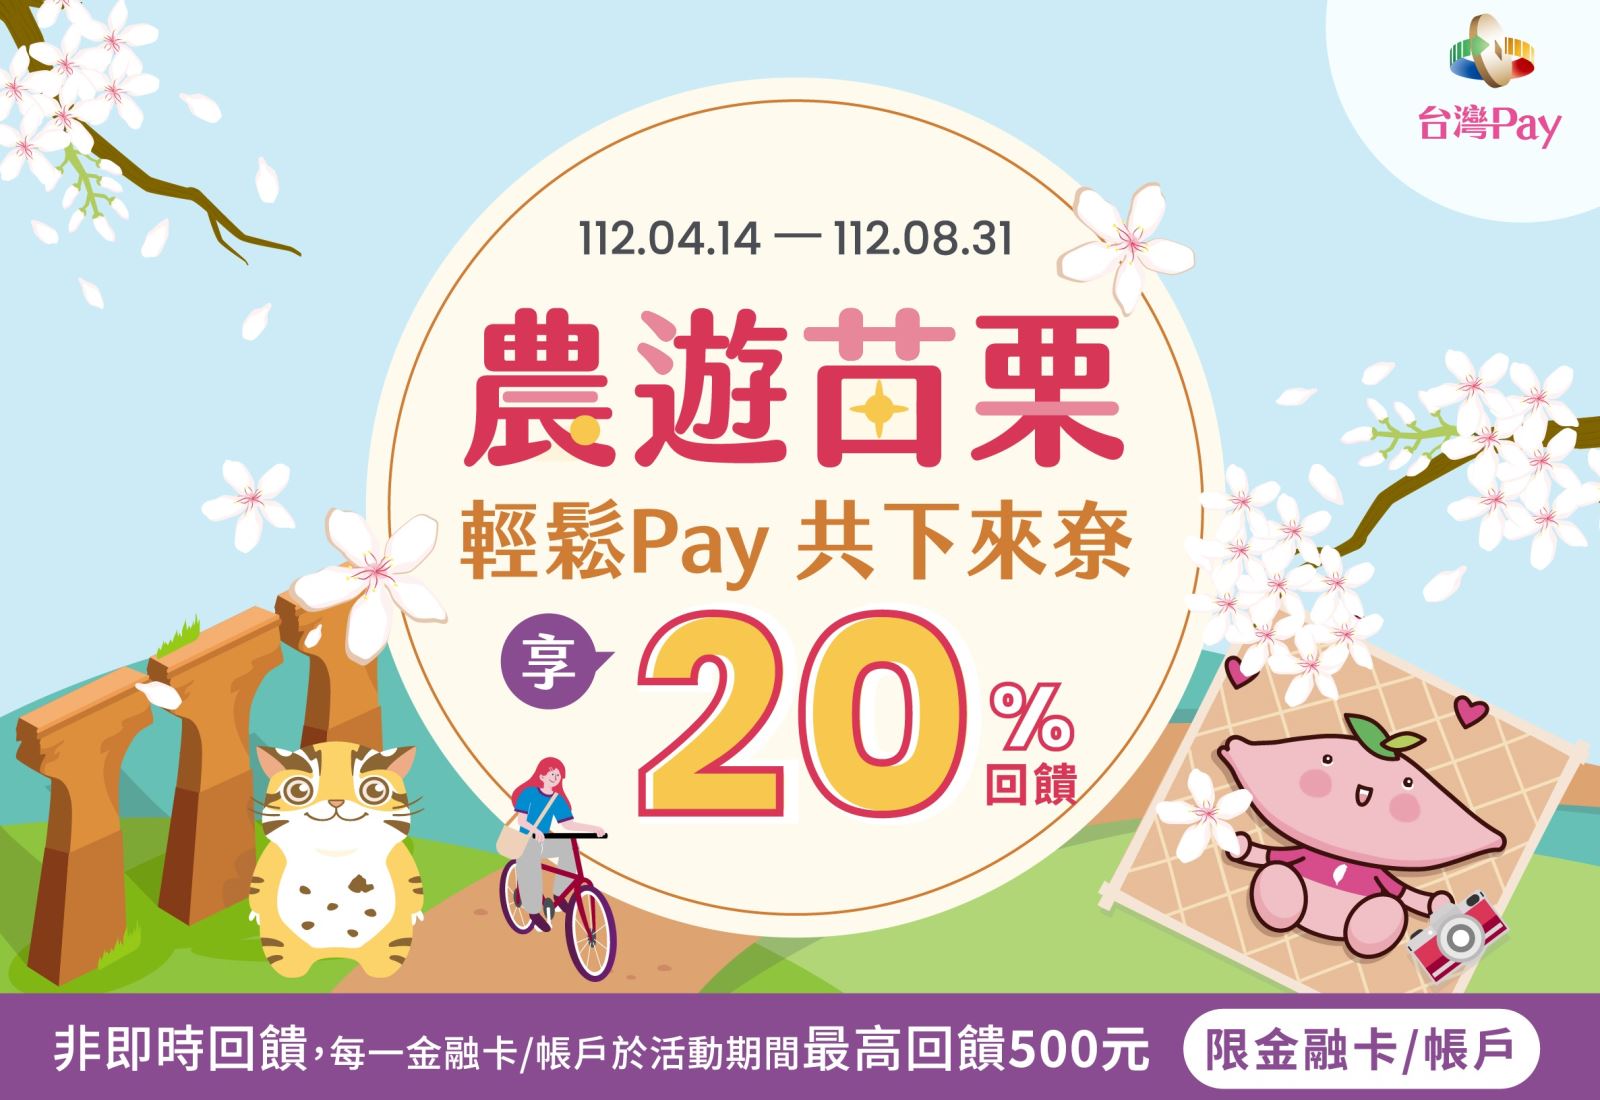 以「台灣Pay」QR Code掃碼支付，單筆消費不限金額可享20%現金回饋，每一金融卡號/帳戶於活動期間最高回饋新臺幣500元為限